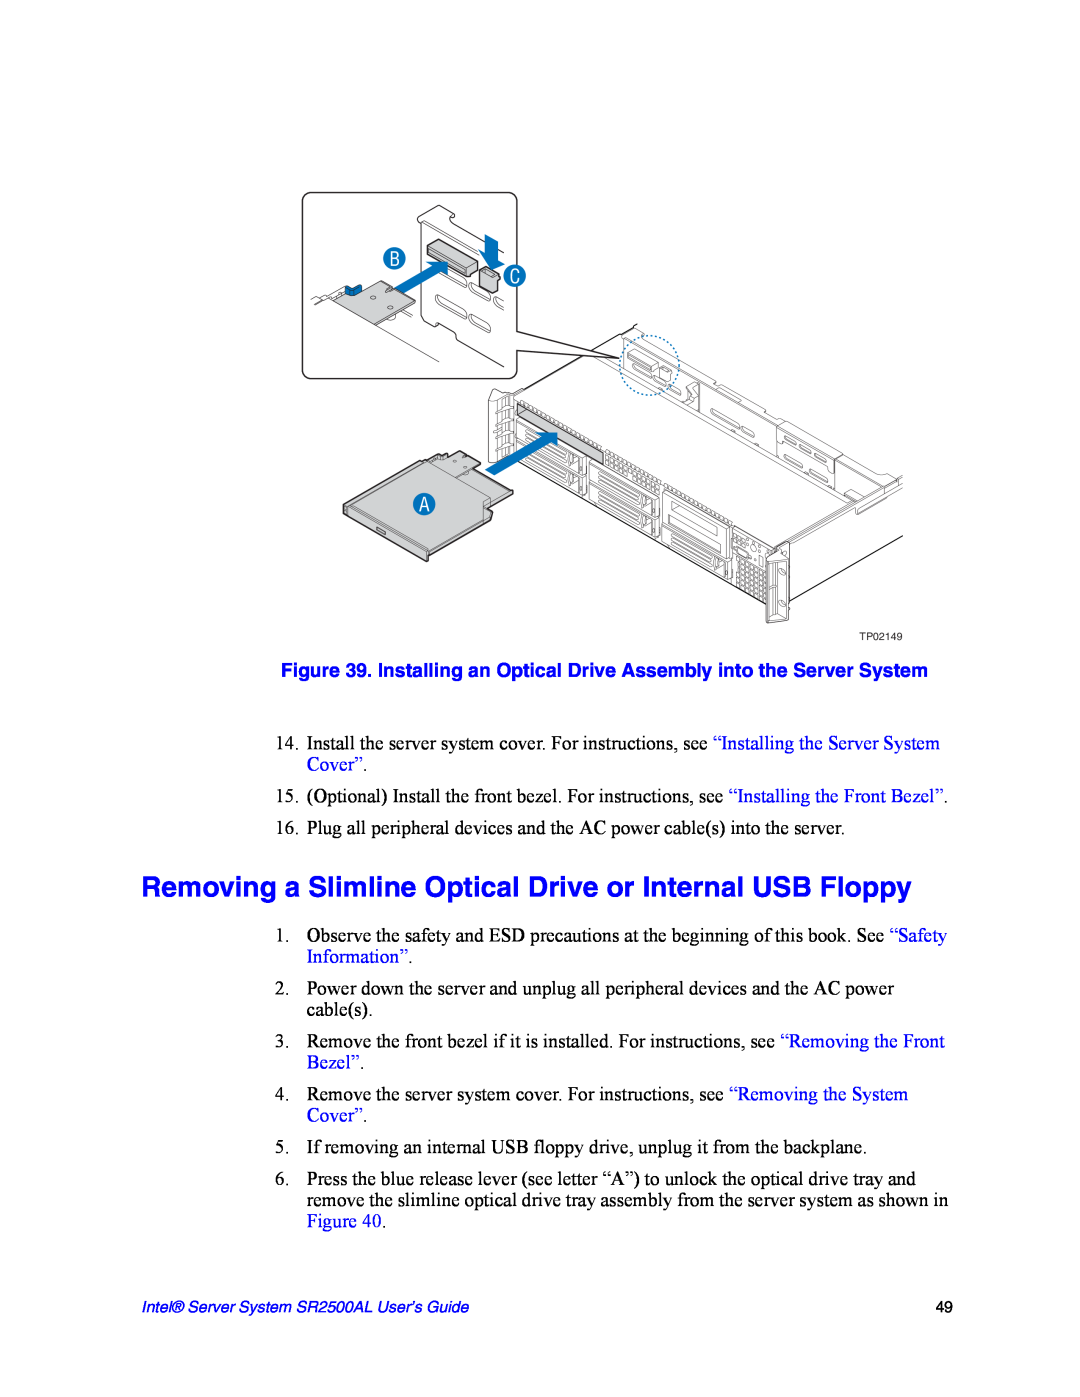 Intel SR2500AL manual Removing a Slimline Optical Drive or Internal USB Floppy, B C A 